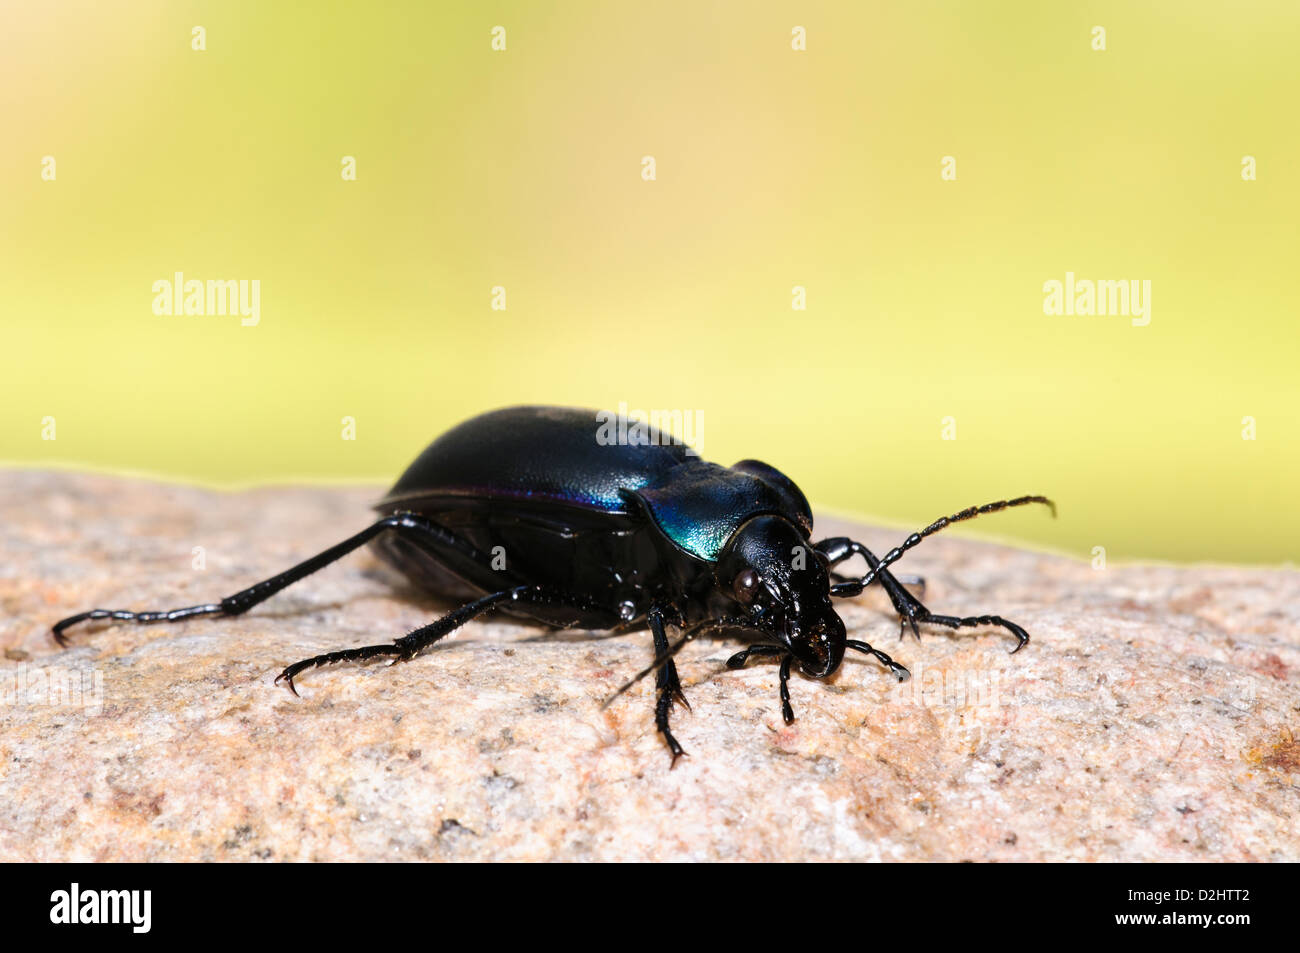 Una massa viola beetle (Carabus tendente al violaceo) prendere il sole su una pietra a RSPB Loch Garten, Inverness-shire, Scozia. Agosto. Foto Stock